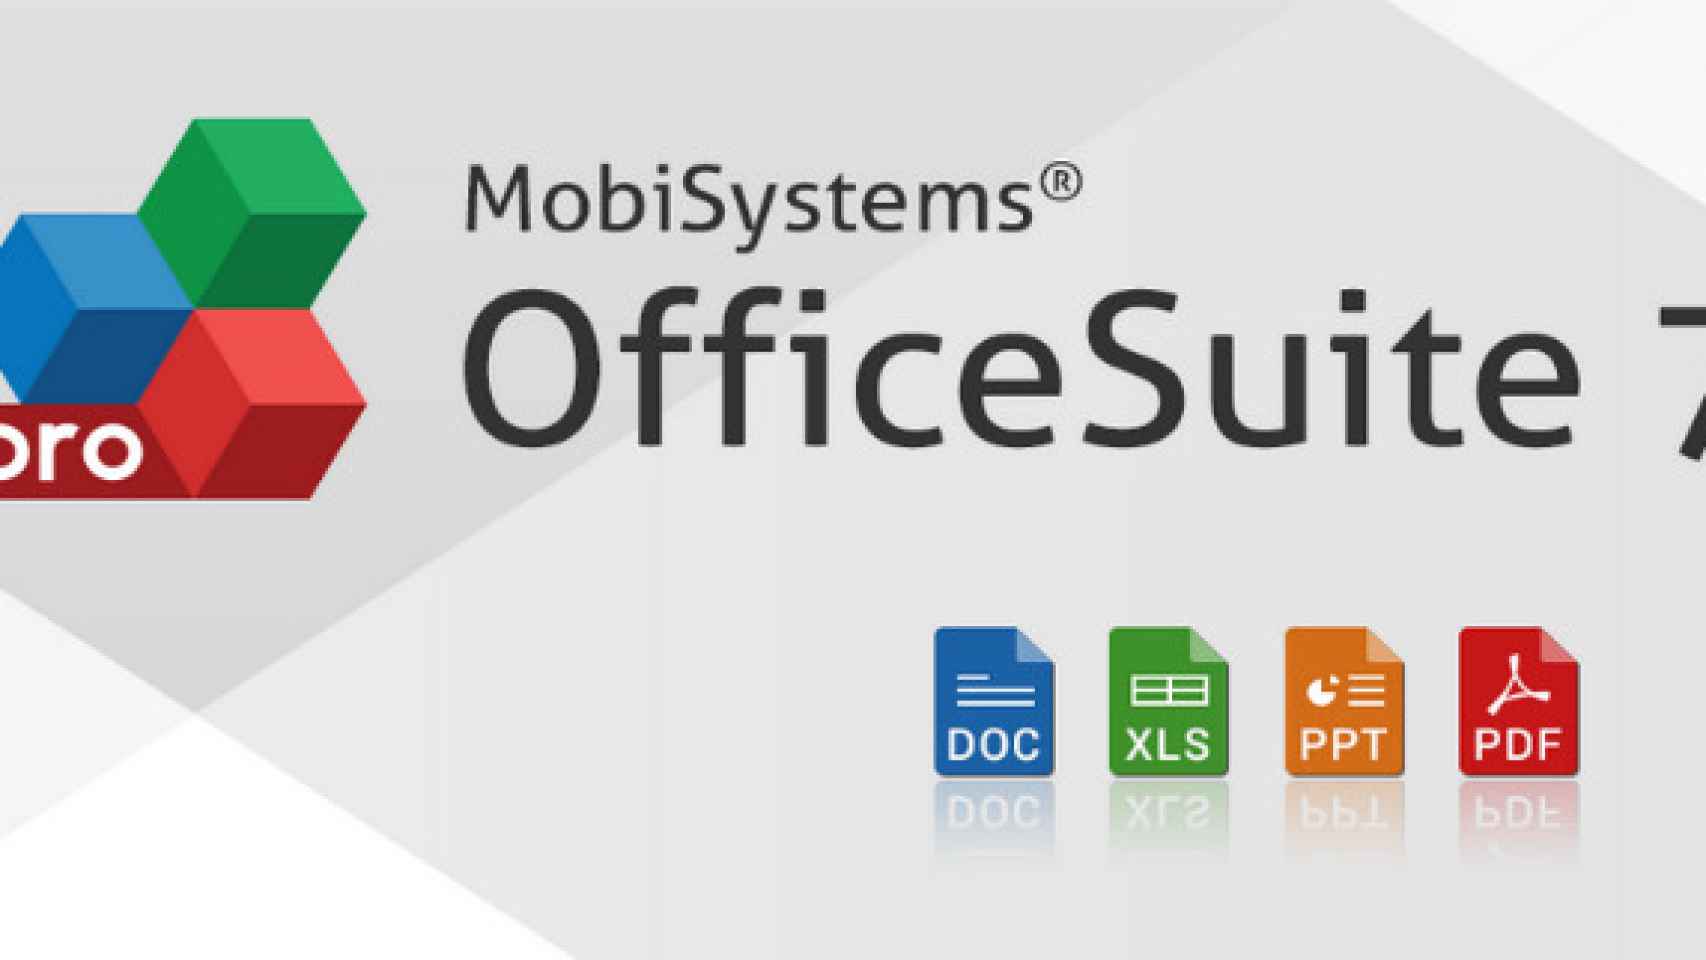 OfficeSuite Professional 7 gratis por un día en Amazon. Una completa herramienta de productividad